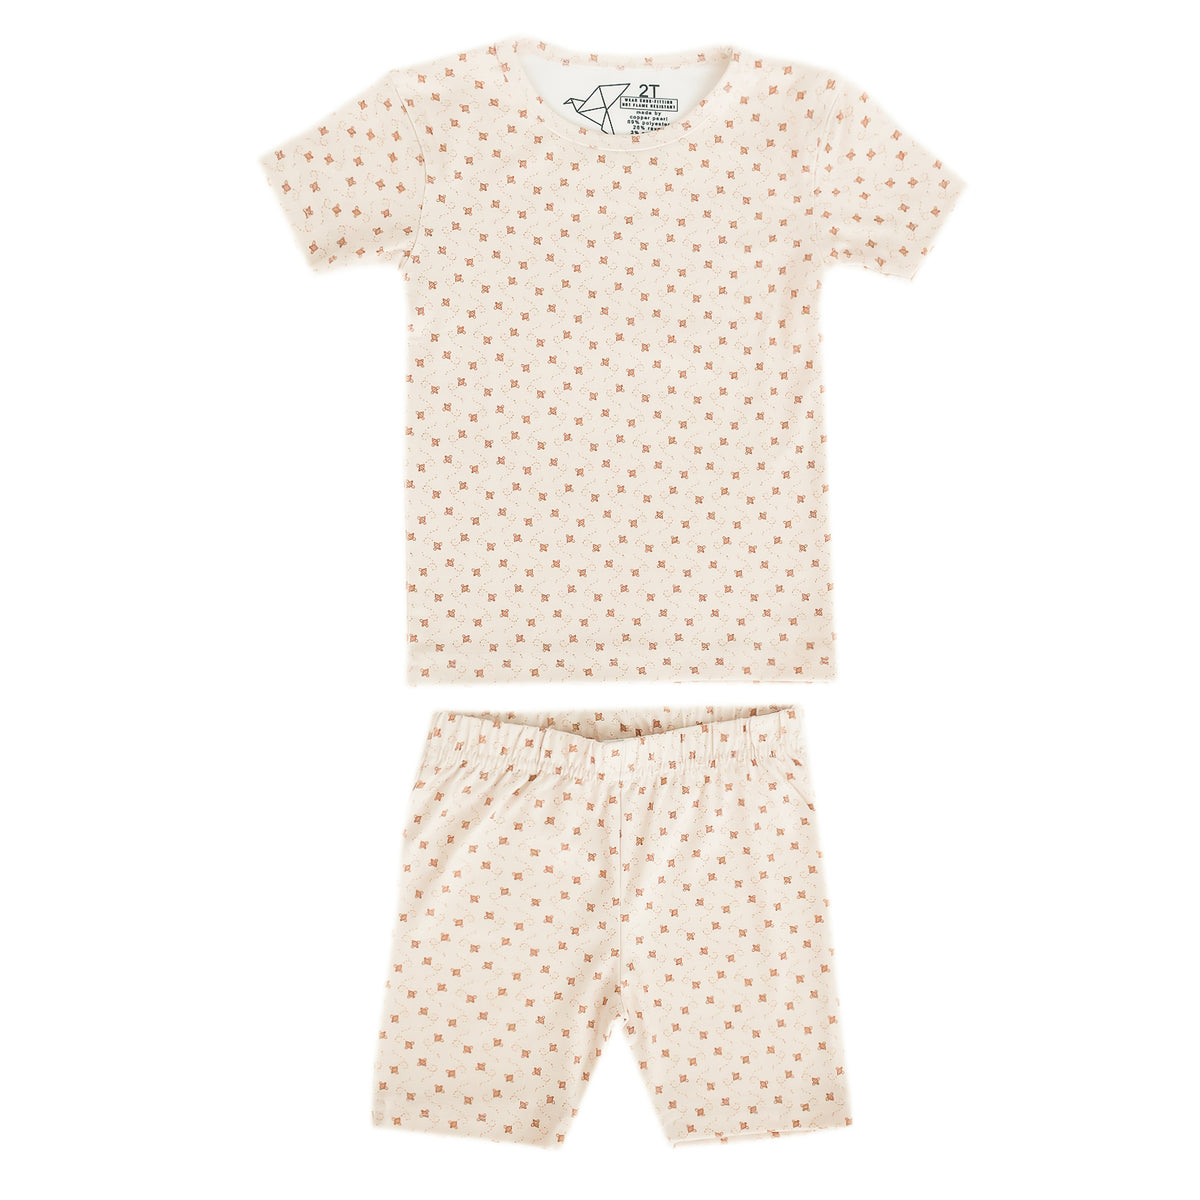 2pc Short Sleeve Pajama Set - Hunnie